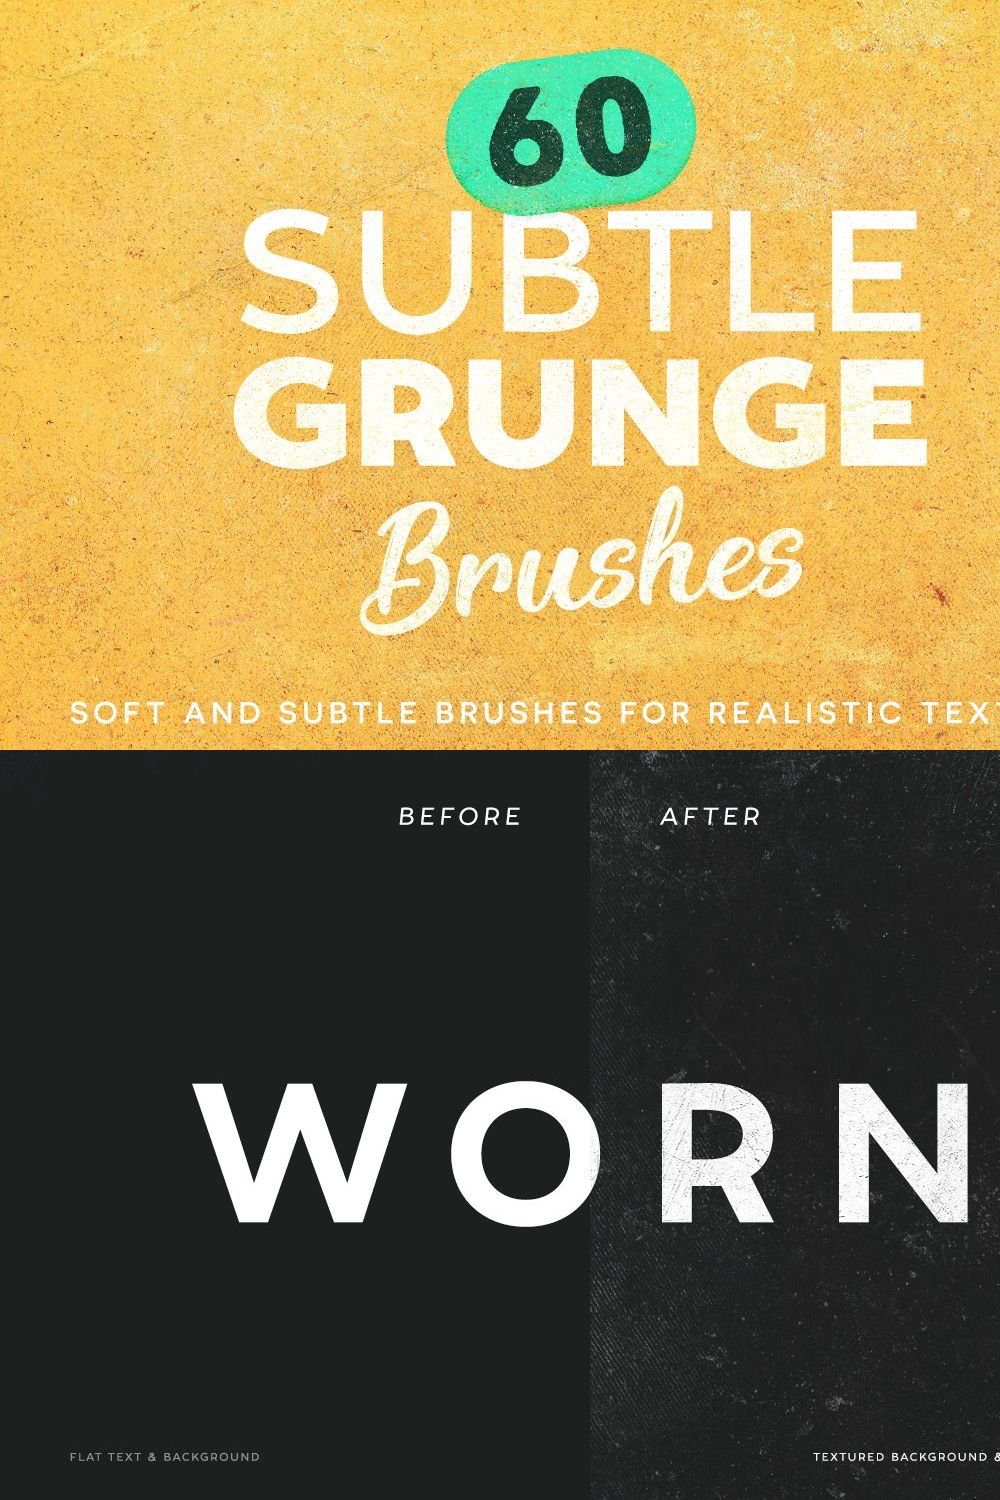 60 Subtle Grunge Brushes pinterest preview image.